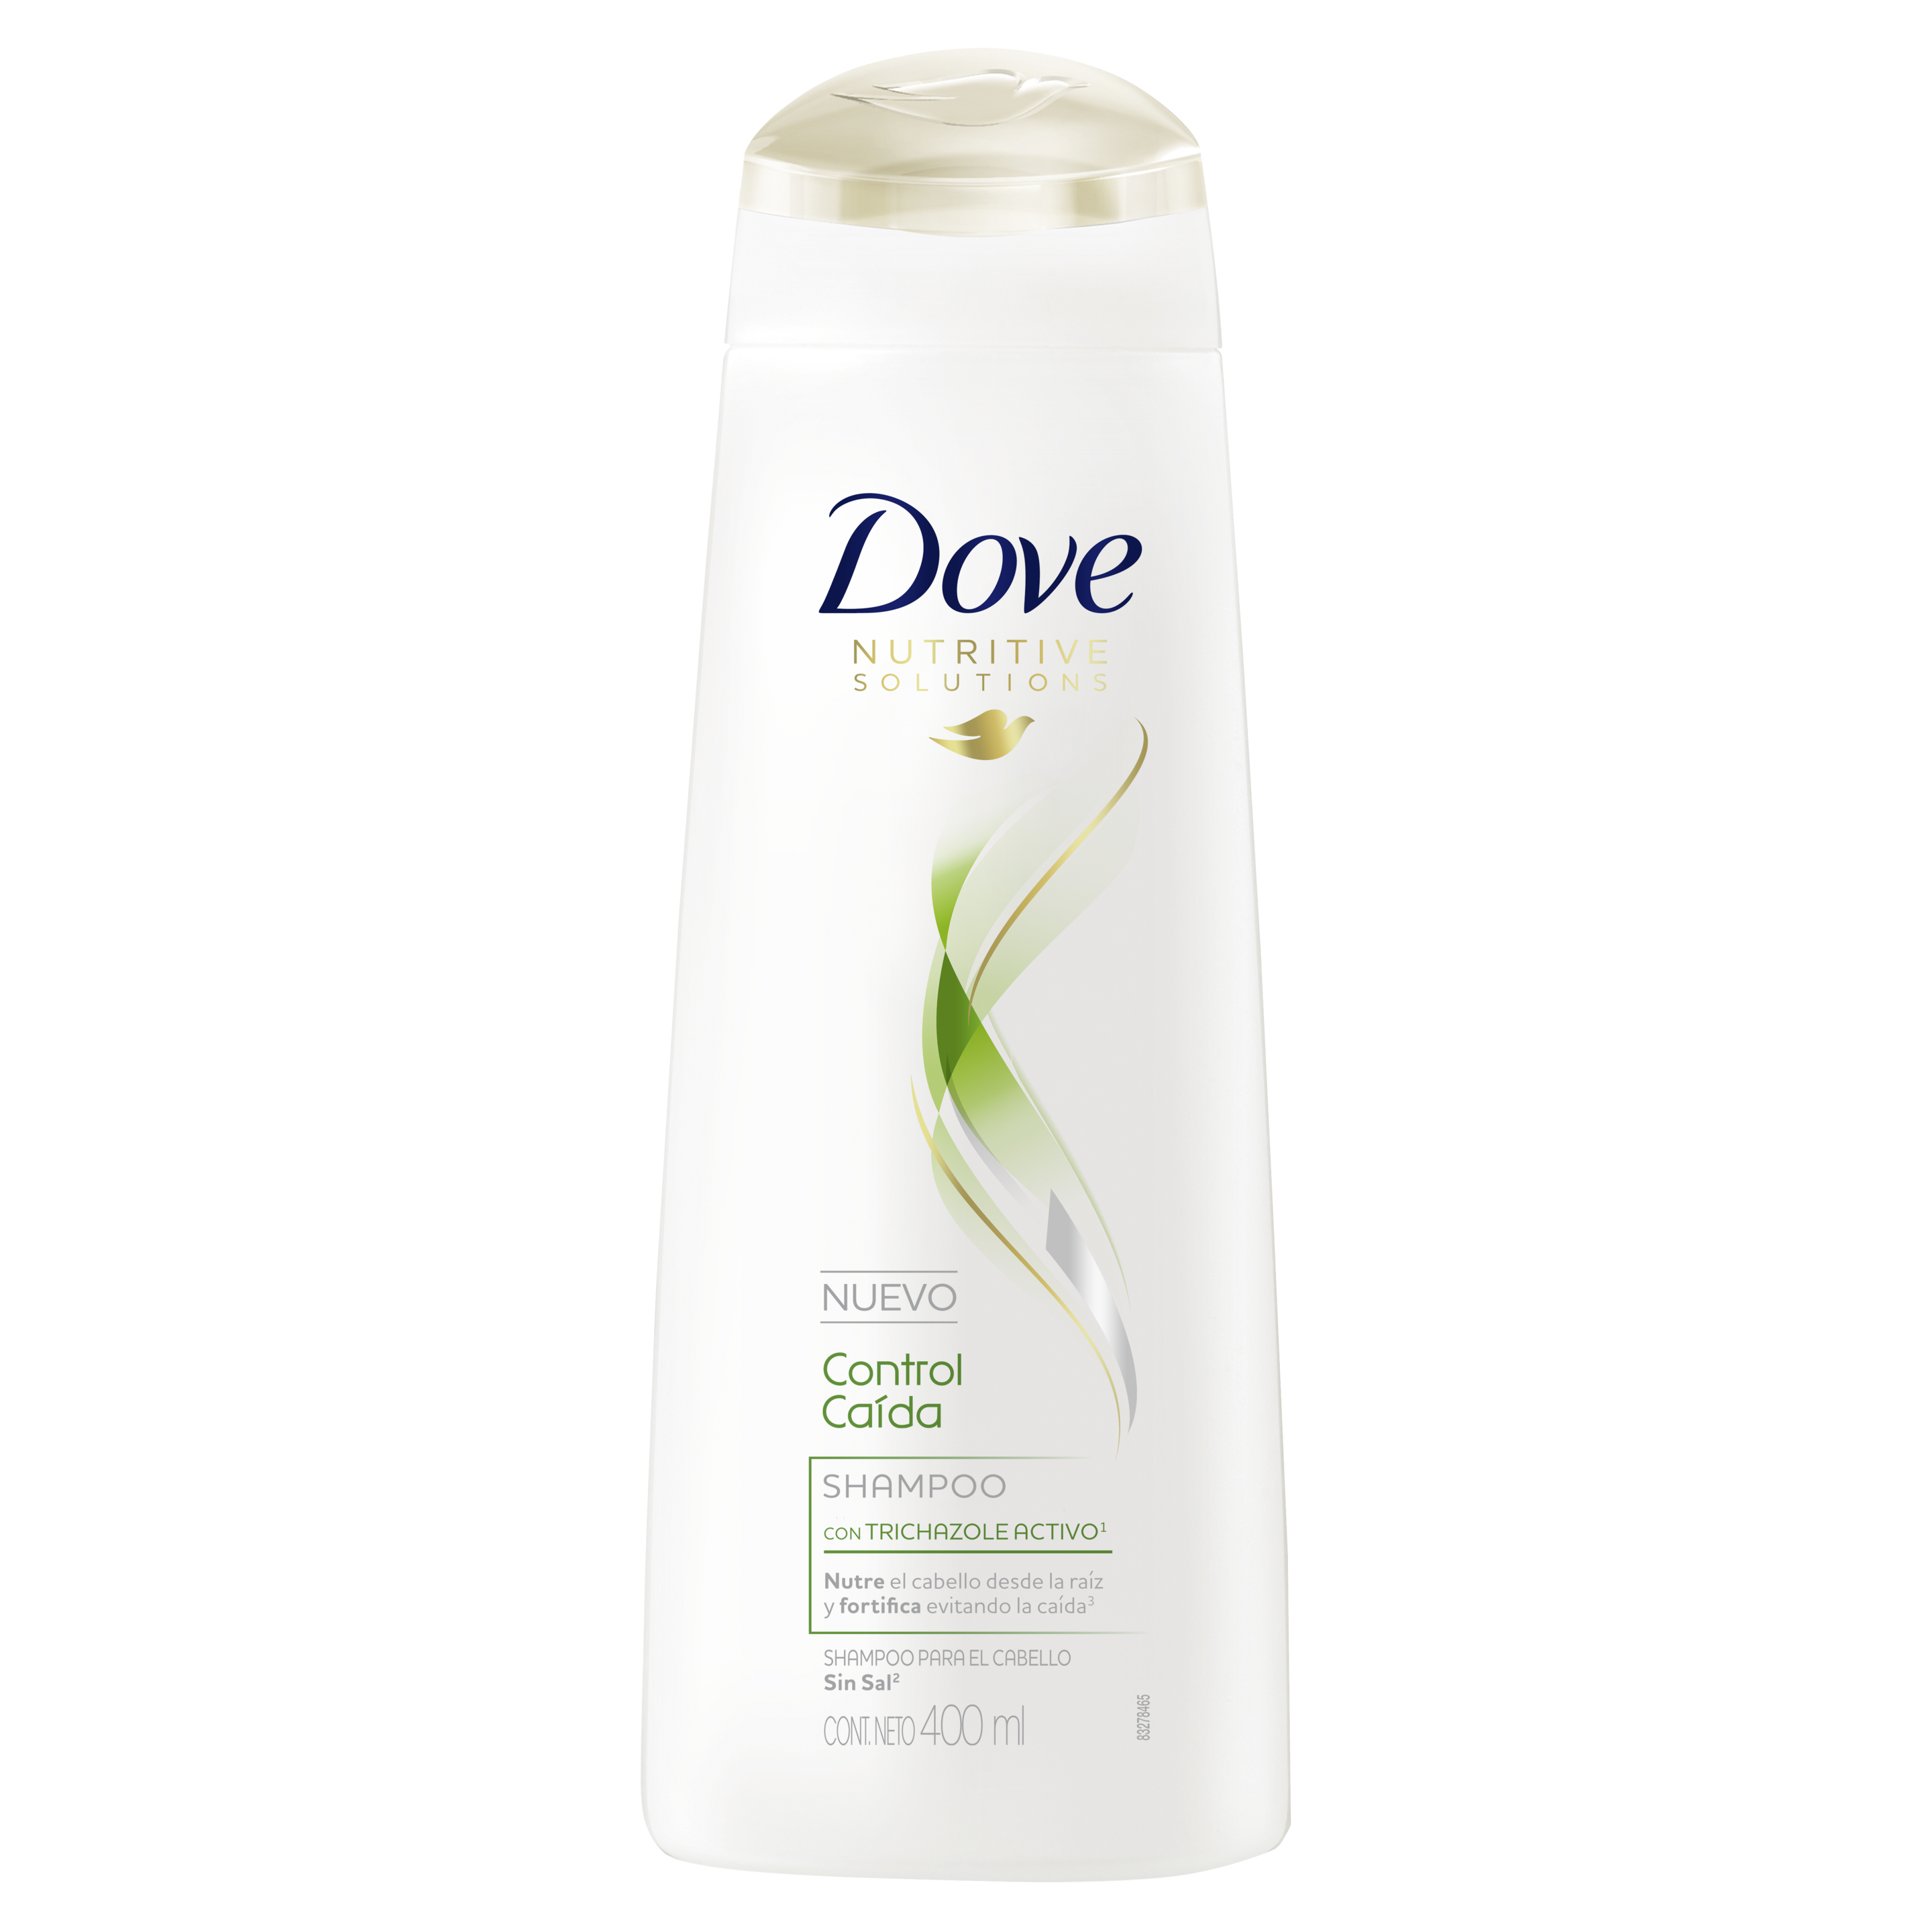 Dove Shampoo Control Caida 400ml